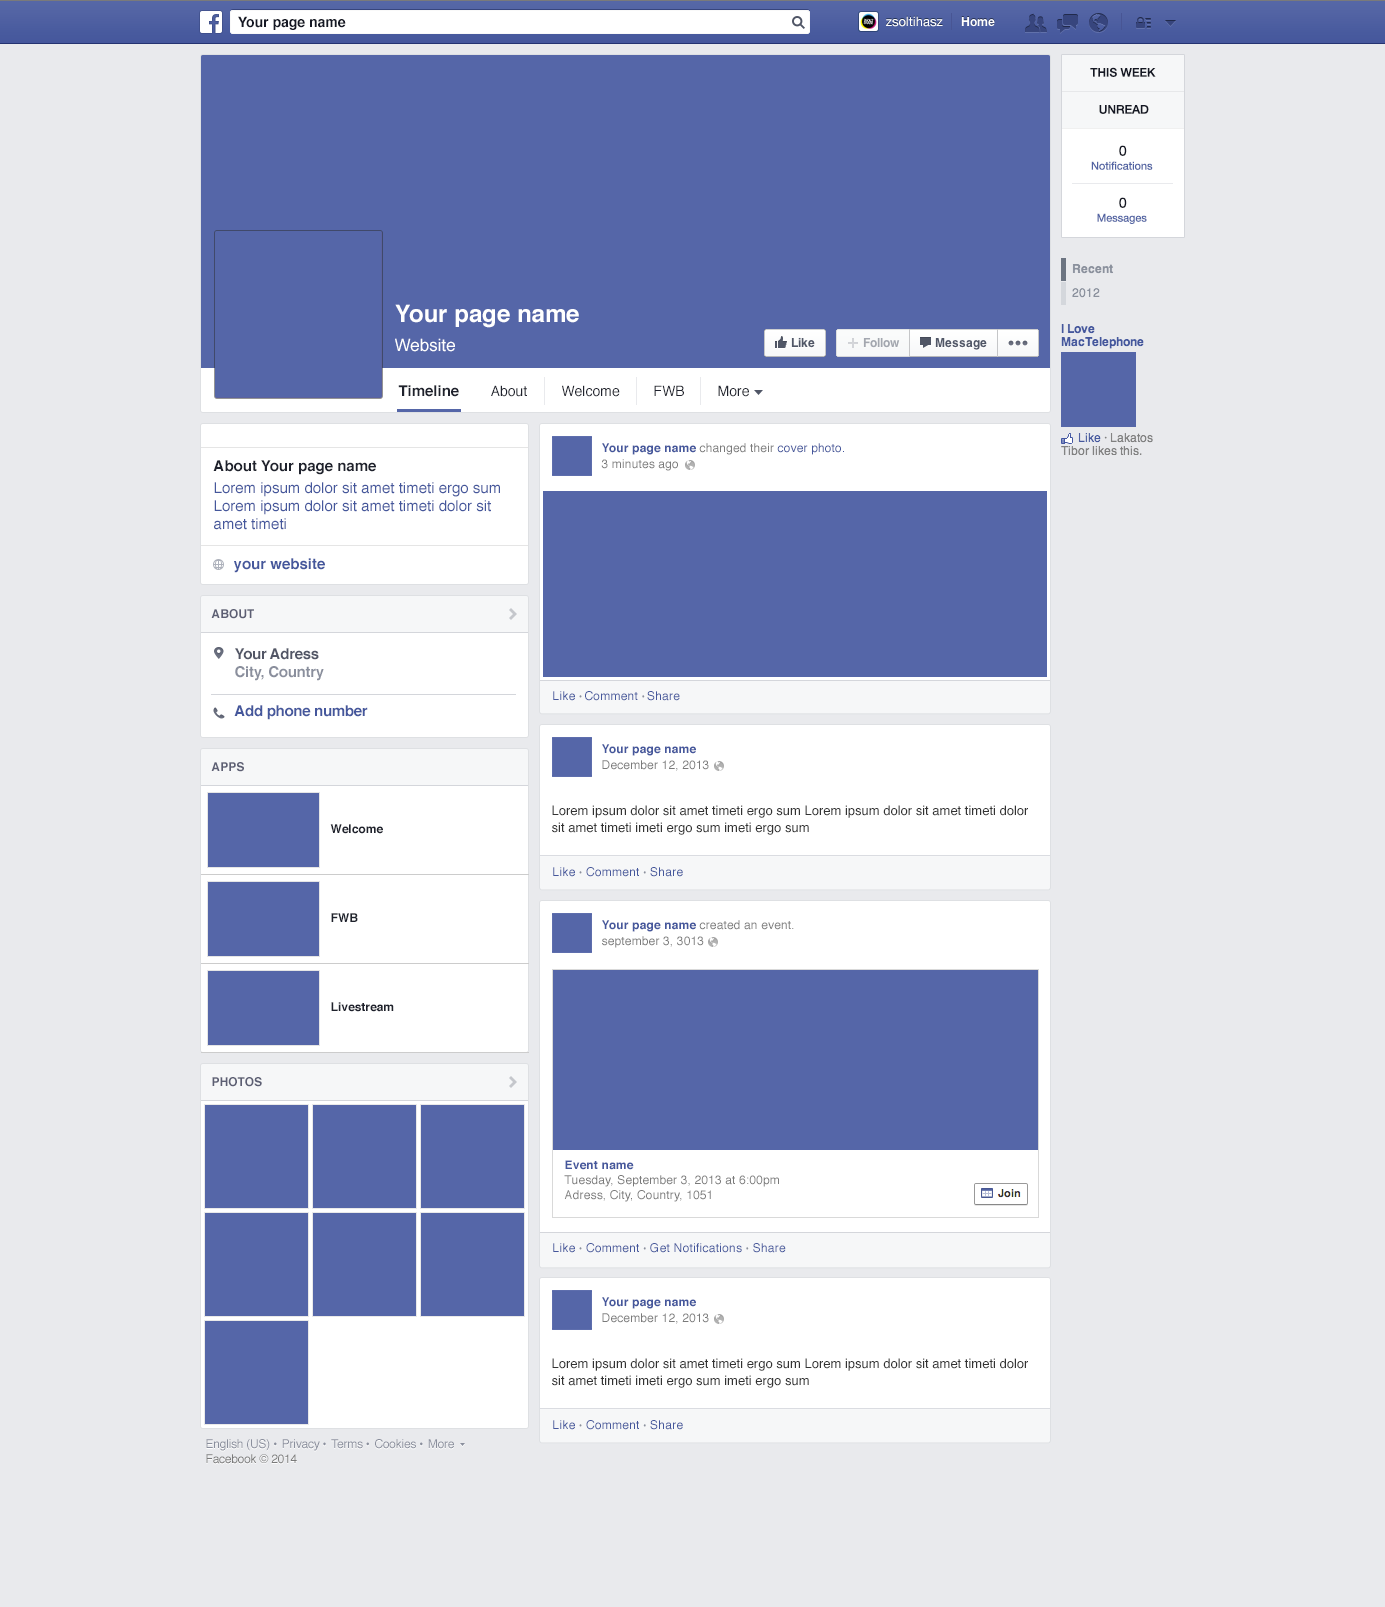 facebook-page-redesign-mockup-psd-download-mockup